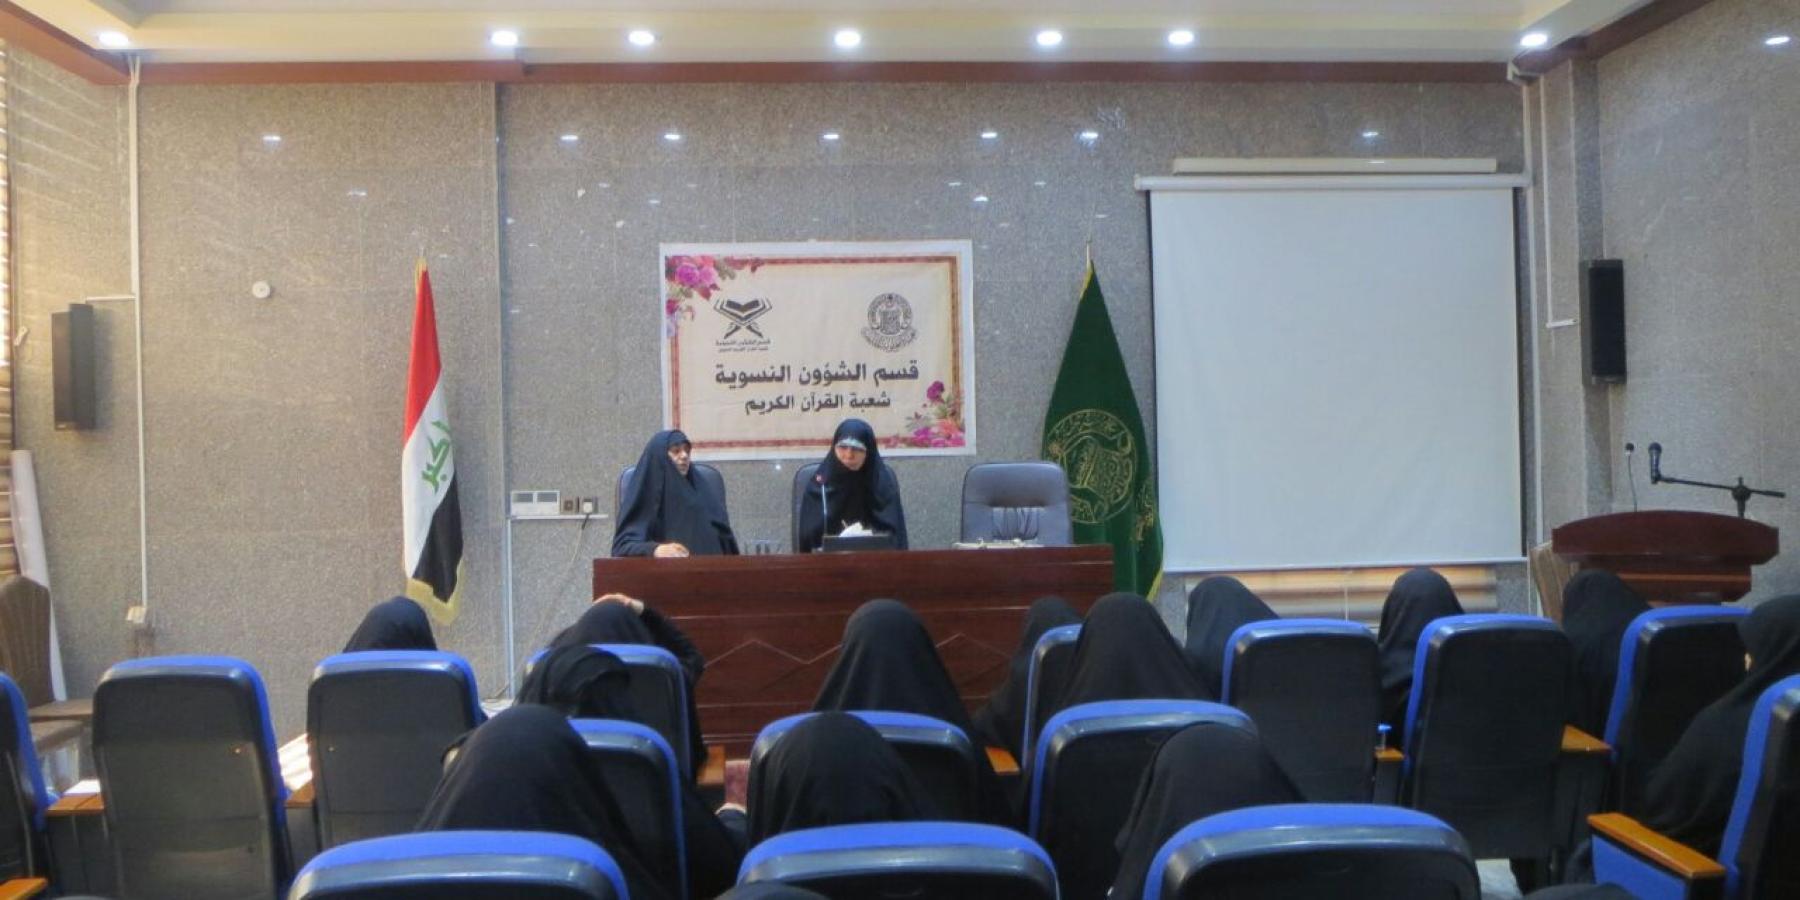  شعبة القرآن الكريم النسوية في العتبة العلوية تقيم دورة متطورة في الصوت و النغم القرآني